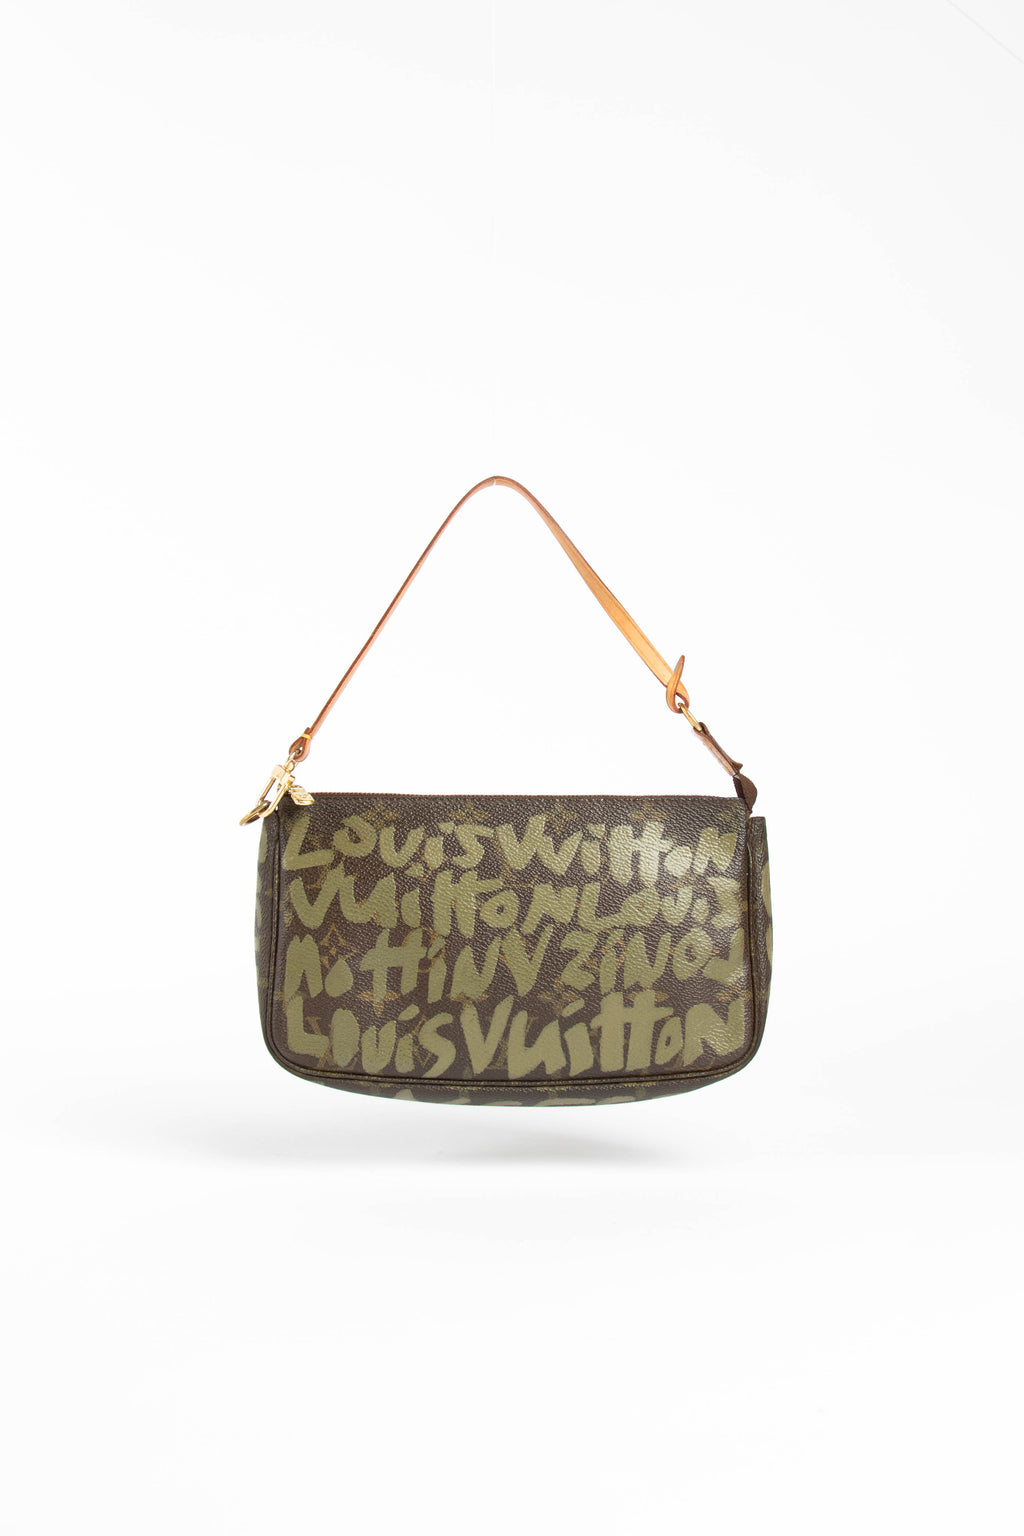 Louis Vuitton, Bags, Auth New Louis Vuitton Pink Pleaty Pm Mini Shoulder  Bag Rare Monogram Denim